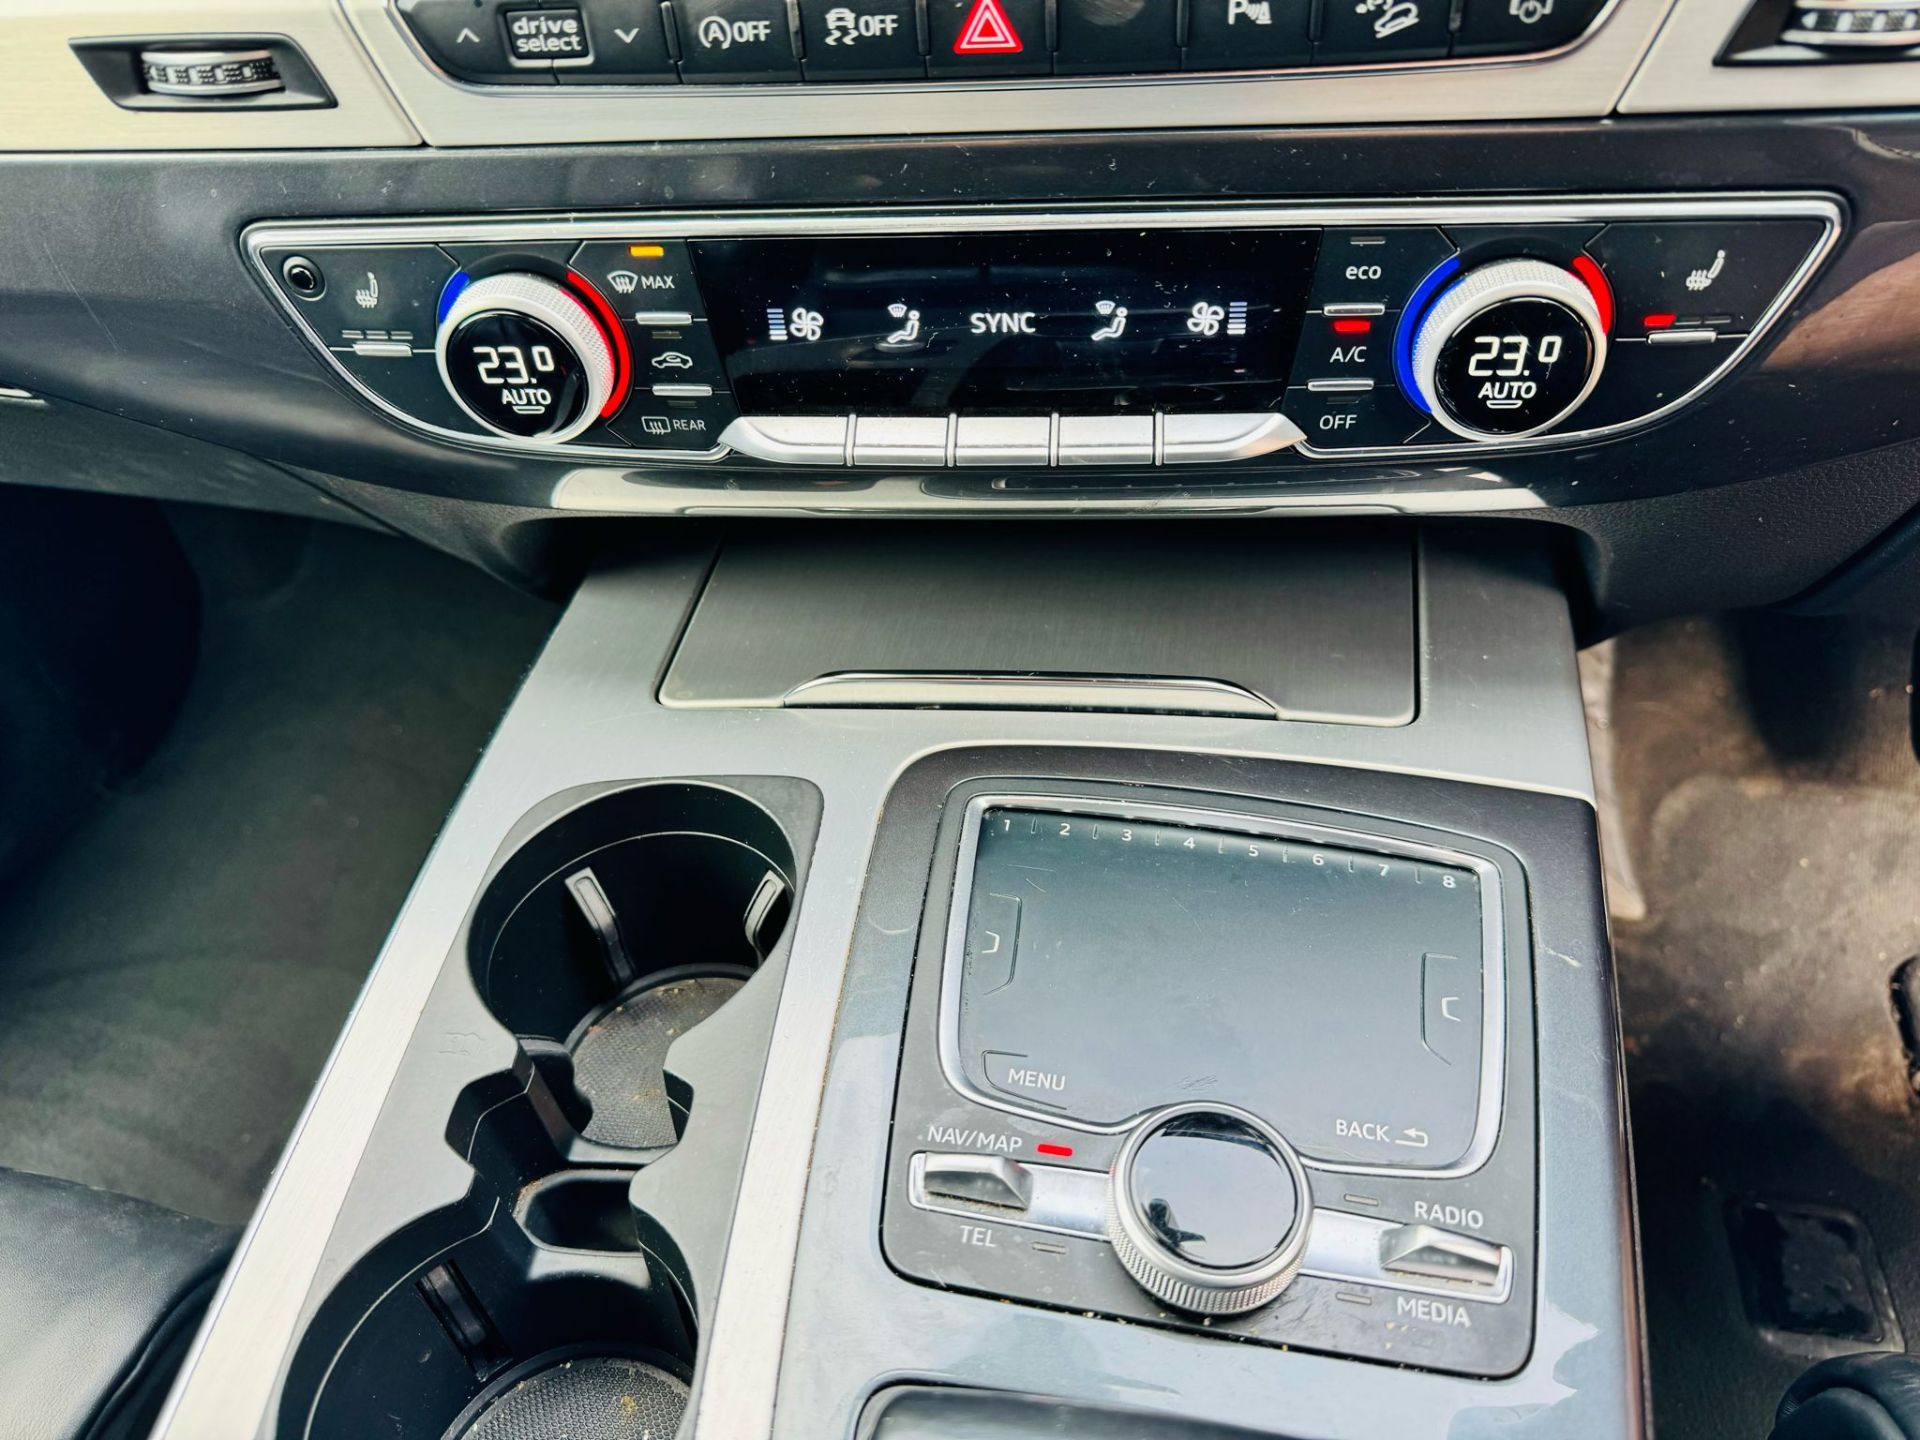 Audi SQ7 4.0TDI V8 Quattro 430BHP "SQ7 EDITION" Auto (7 Seats) 2018 18Reg -Sat Nav -Reversing camera - Image 27 of 37